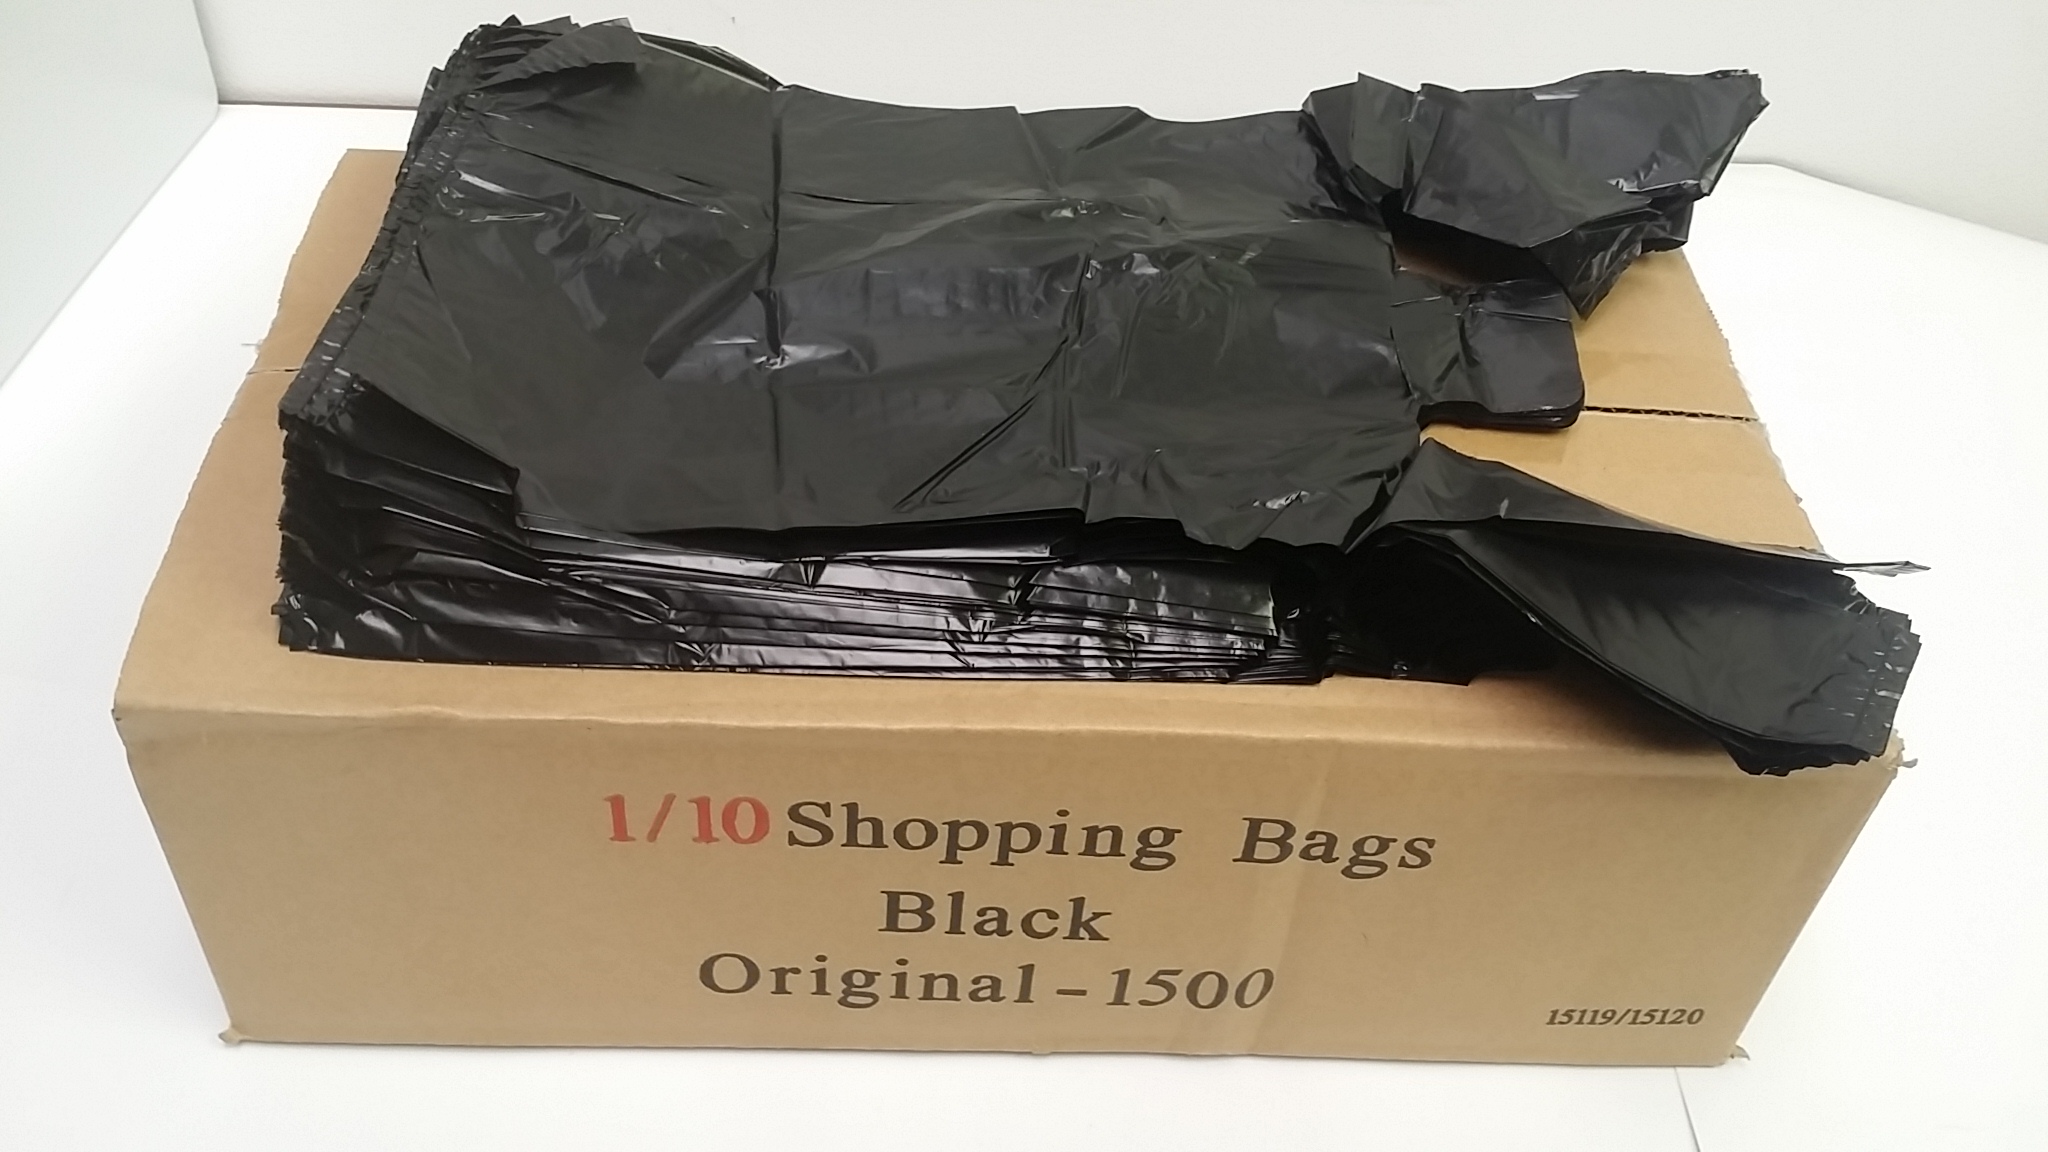 1/10 SMALL BLACK PLASTIC BAG 13 MIC 8 in x 5 in x 16 in 800pcs/cs W'T:4.7LB